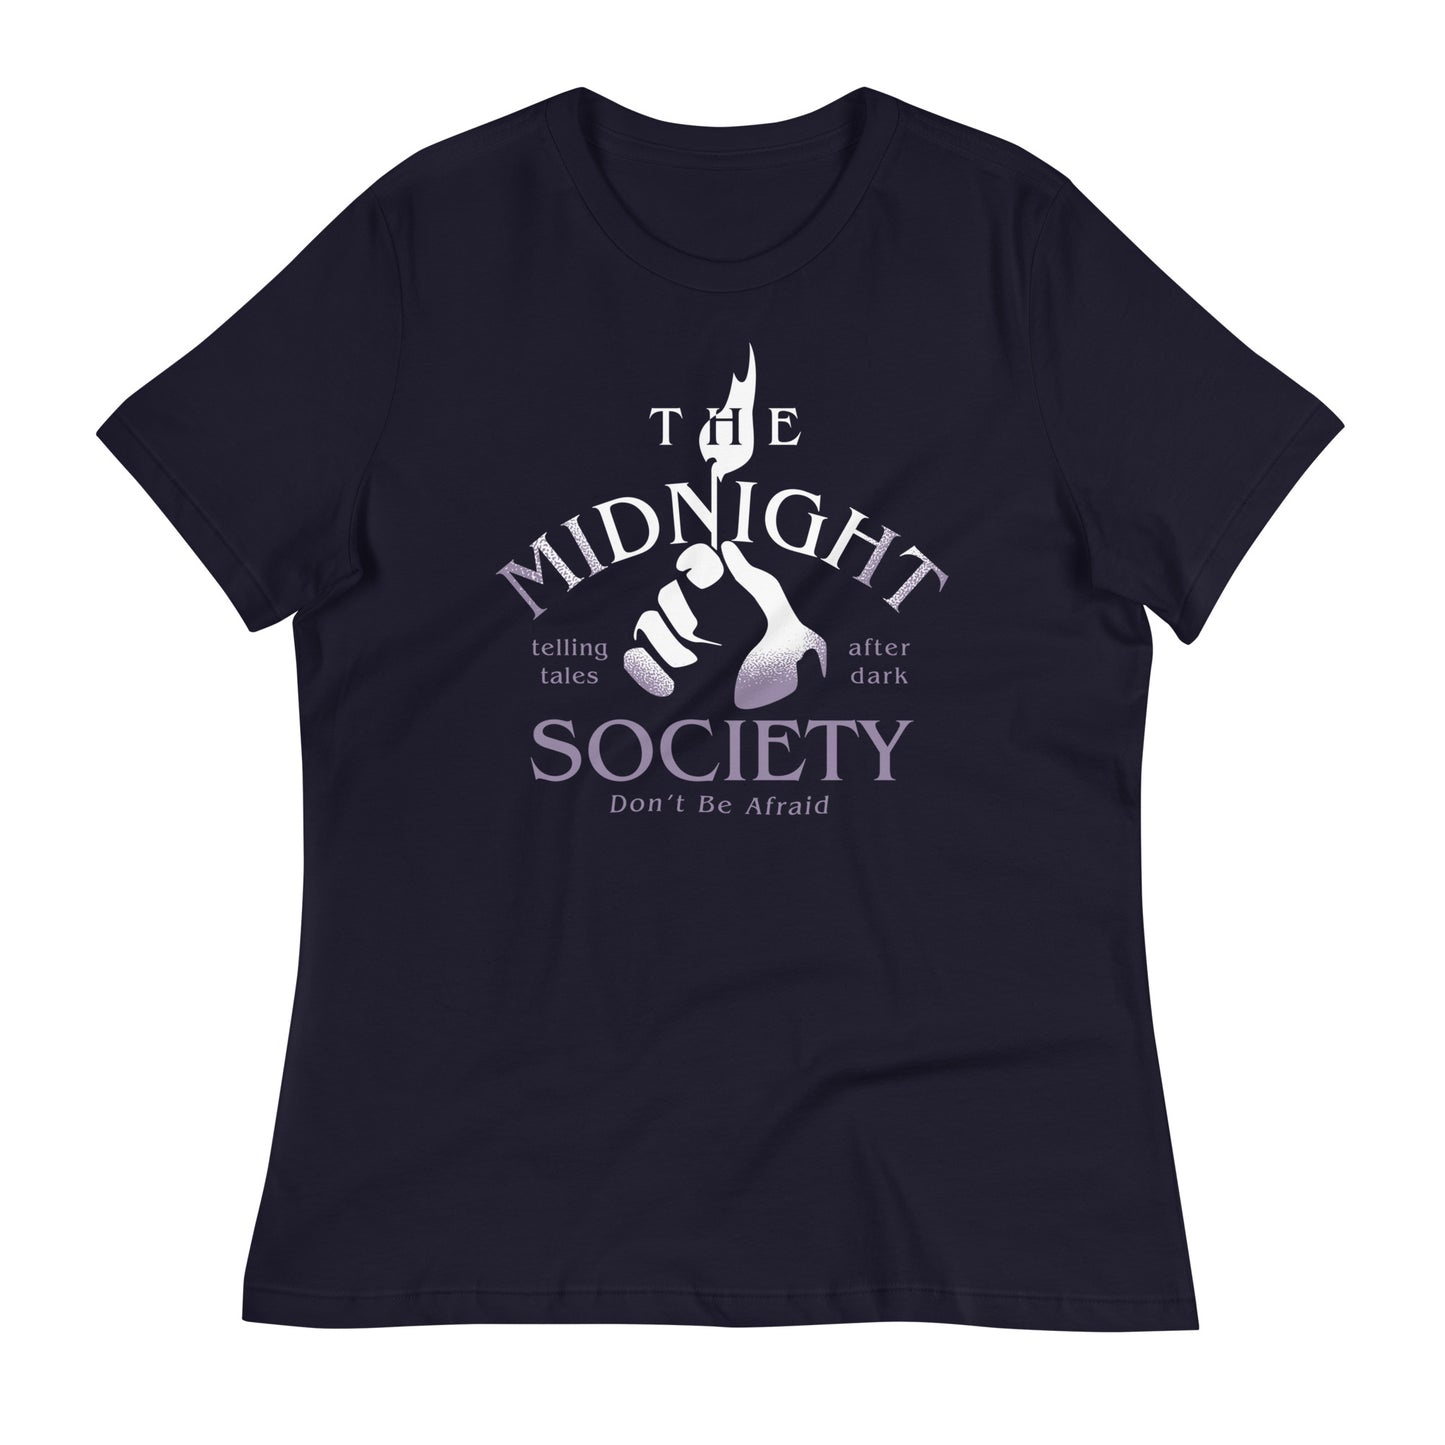 The Midnight Society Women's Signature Tee